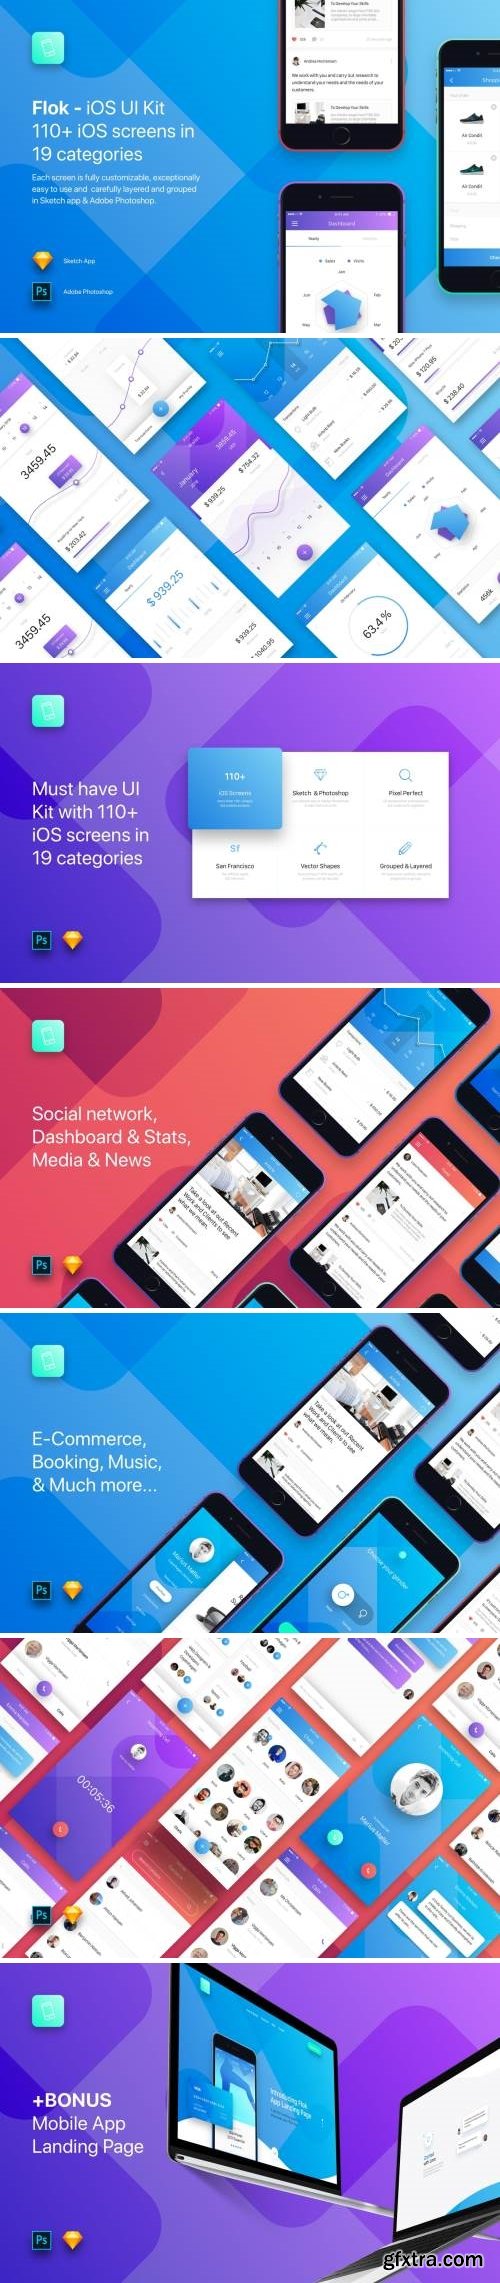 Flok iOS UI Kit Template